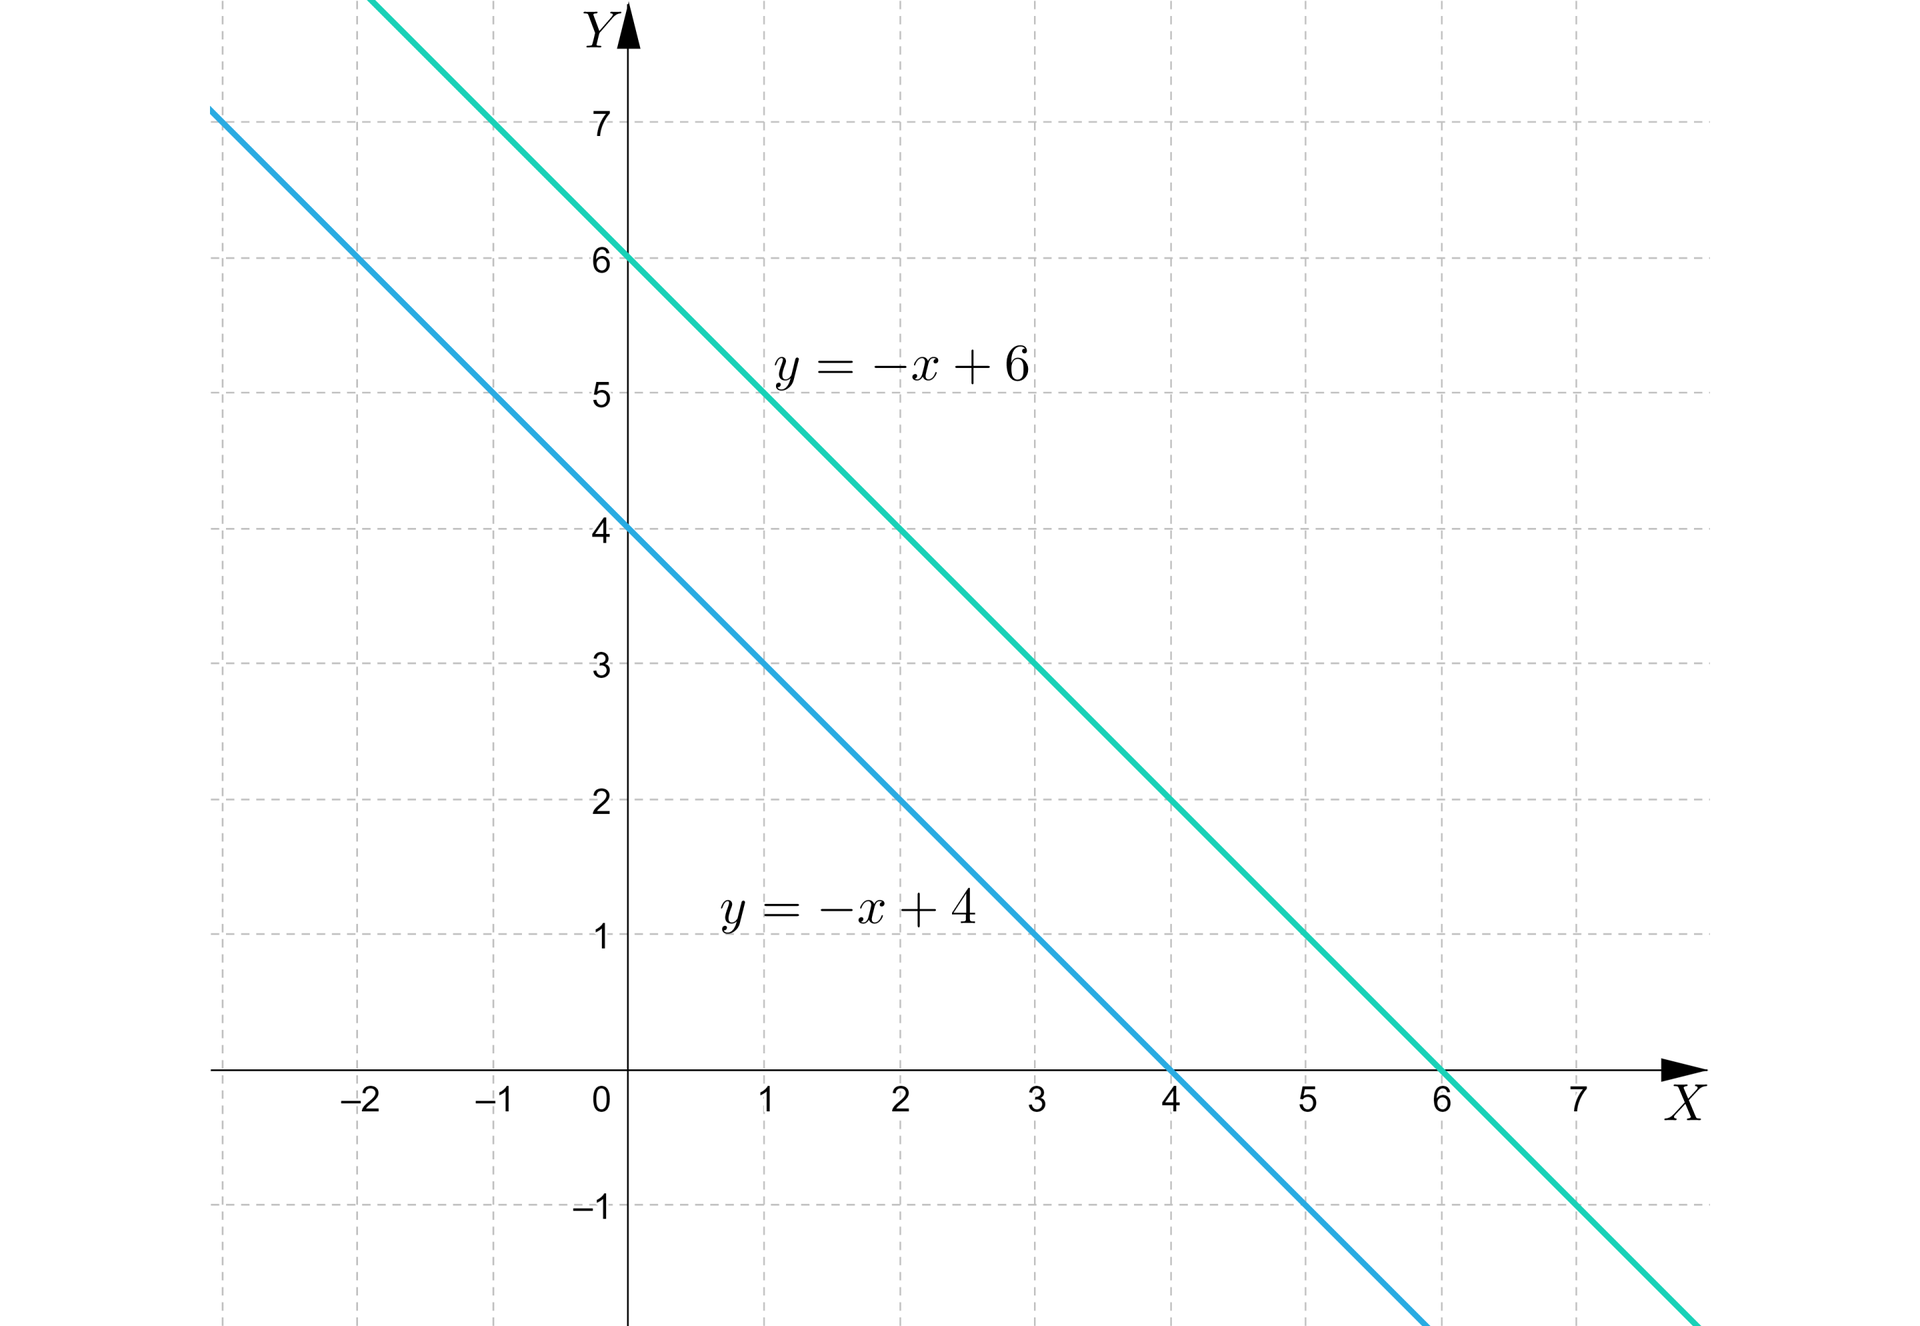 Ilustracja przedstawia wykres z poziomą osią X od minus pięciu do pięciu oraz z pionową osią Y od minus pięciu do trzech. Na płaszczyźnie narysowano dwie ukośne równoległe proste. Biegnąca z lewej strony prosta opisana jest wzorem y=-x+4 i  przechodzi przez dwa charakterystyczne punkty: 0;4, 4;0. Biegnąca z prawej strony prosta opisana jest wzorem y=-x+6 i  przechodzi przez dwa charakterystyczne punkty: 0;6, 6;0.